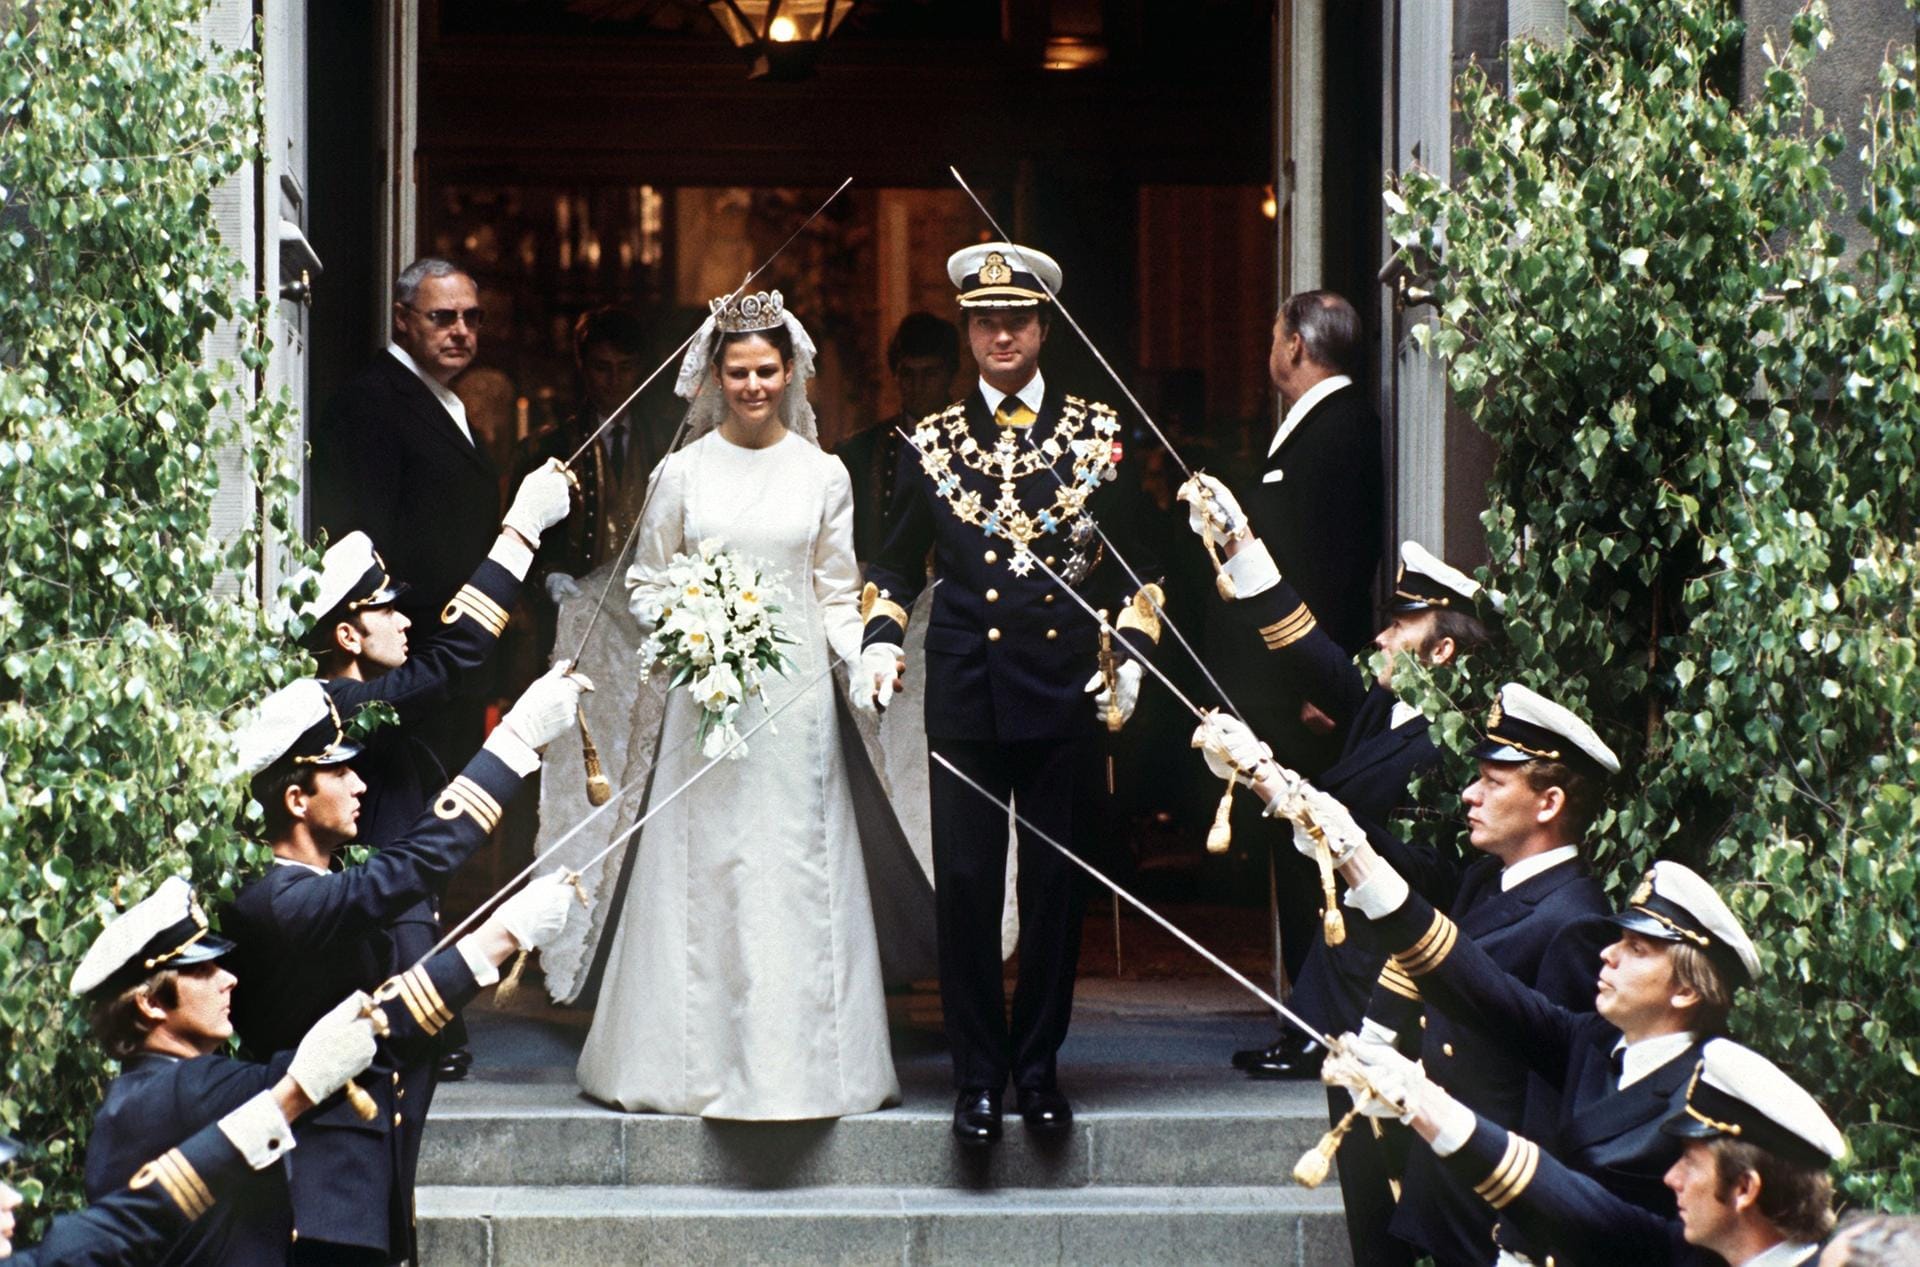 Unsere Landesgenossen scheinen es Europas Monarchen angetan zu haben: Auch König Carl Gustaf von Schweden verliebte sich in eine Deutsche. 1976 trat der schwedische Monarch mit Silvia vor den Traualtar, die er 1972 bei den Olympischen Spielen kennengelernt hatte.